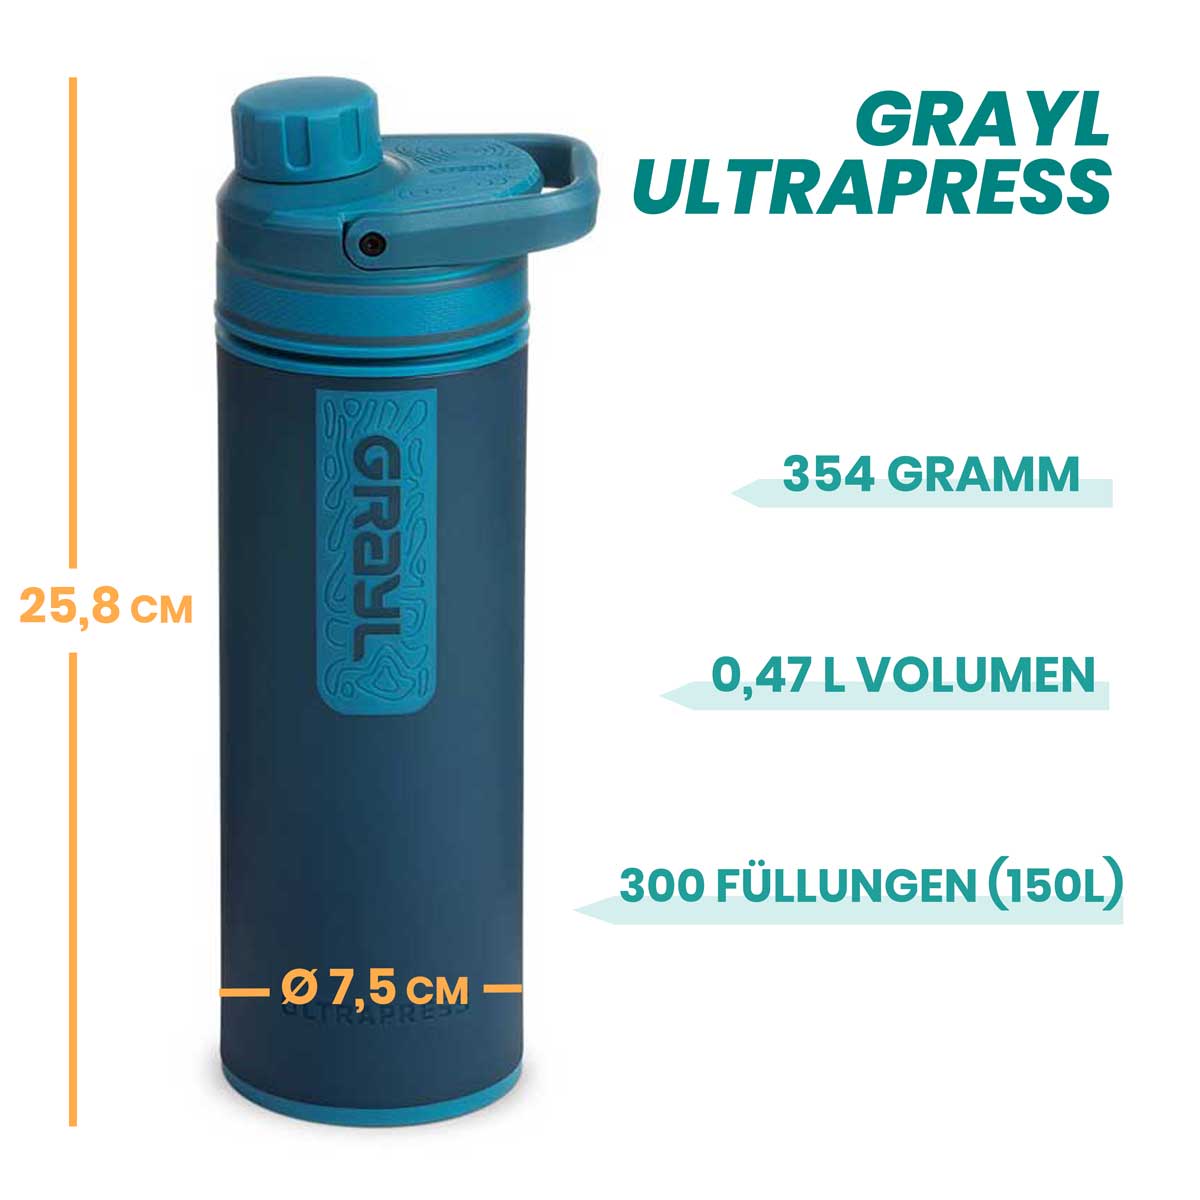 Grayl Ultrapress Eigenschaften